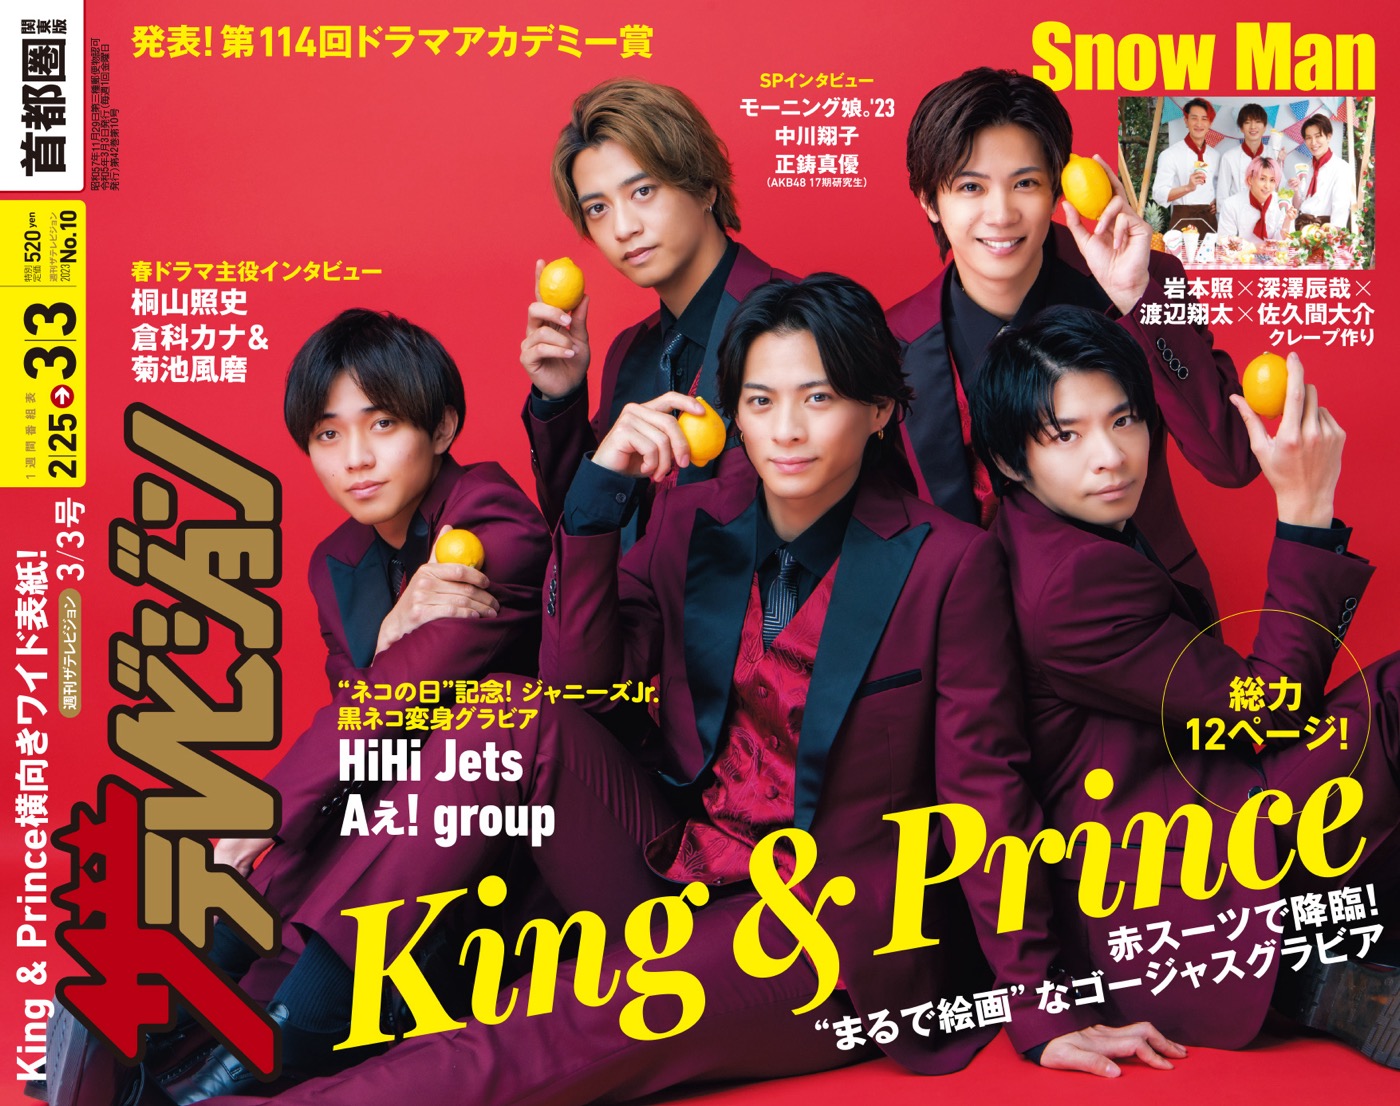 King ＆ Prince、『週刊ザテレビジョン』横向きワイド表紙＆グラビアに登場